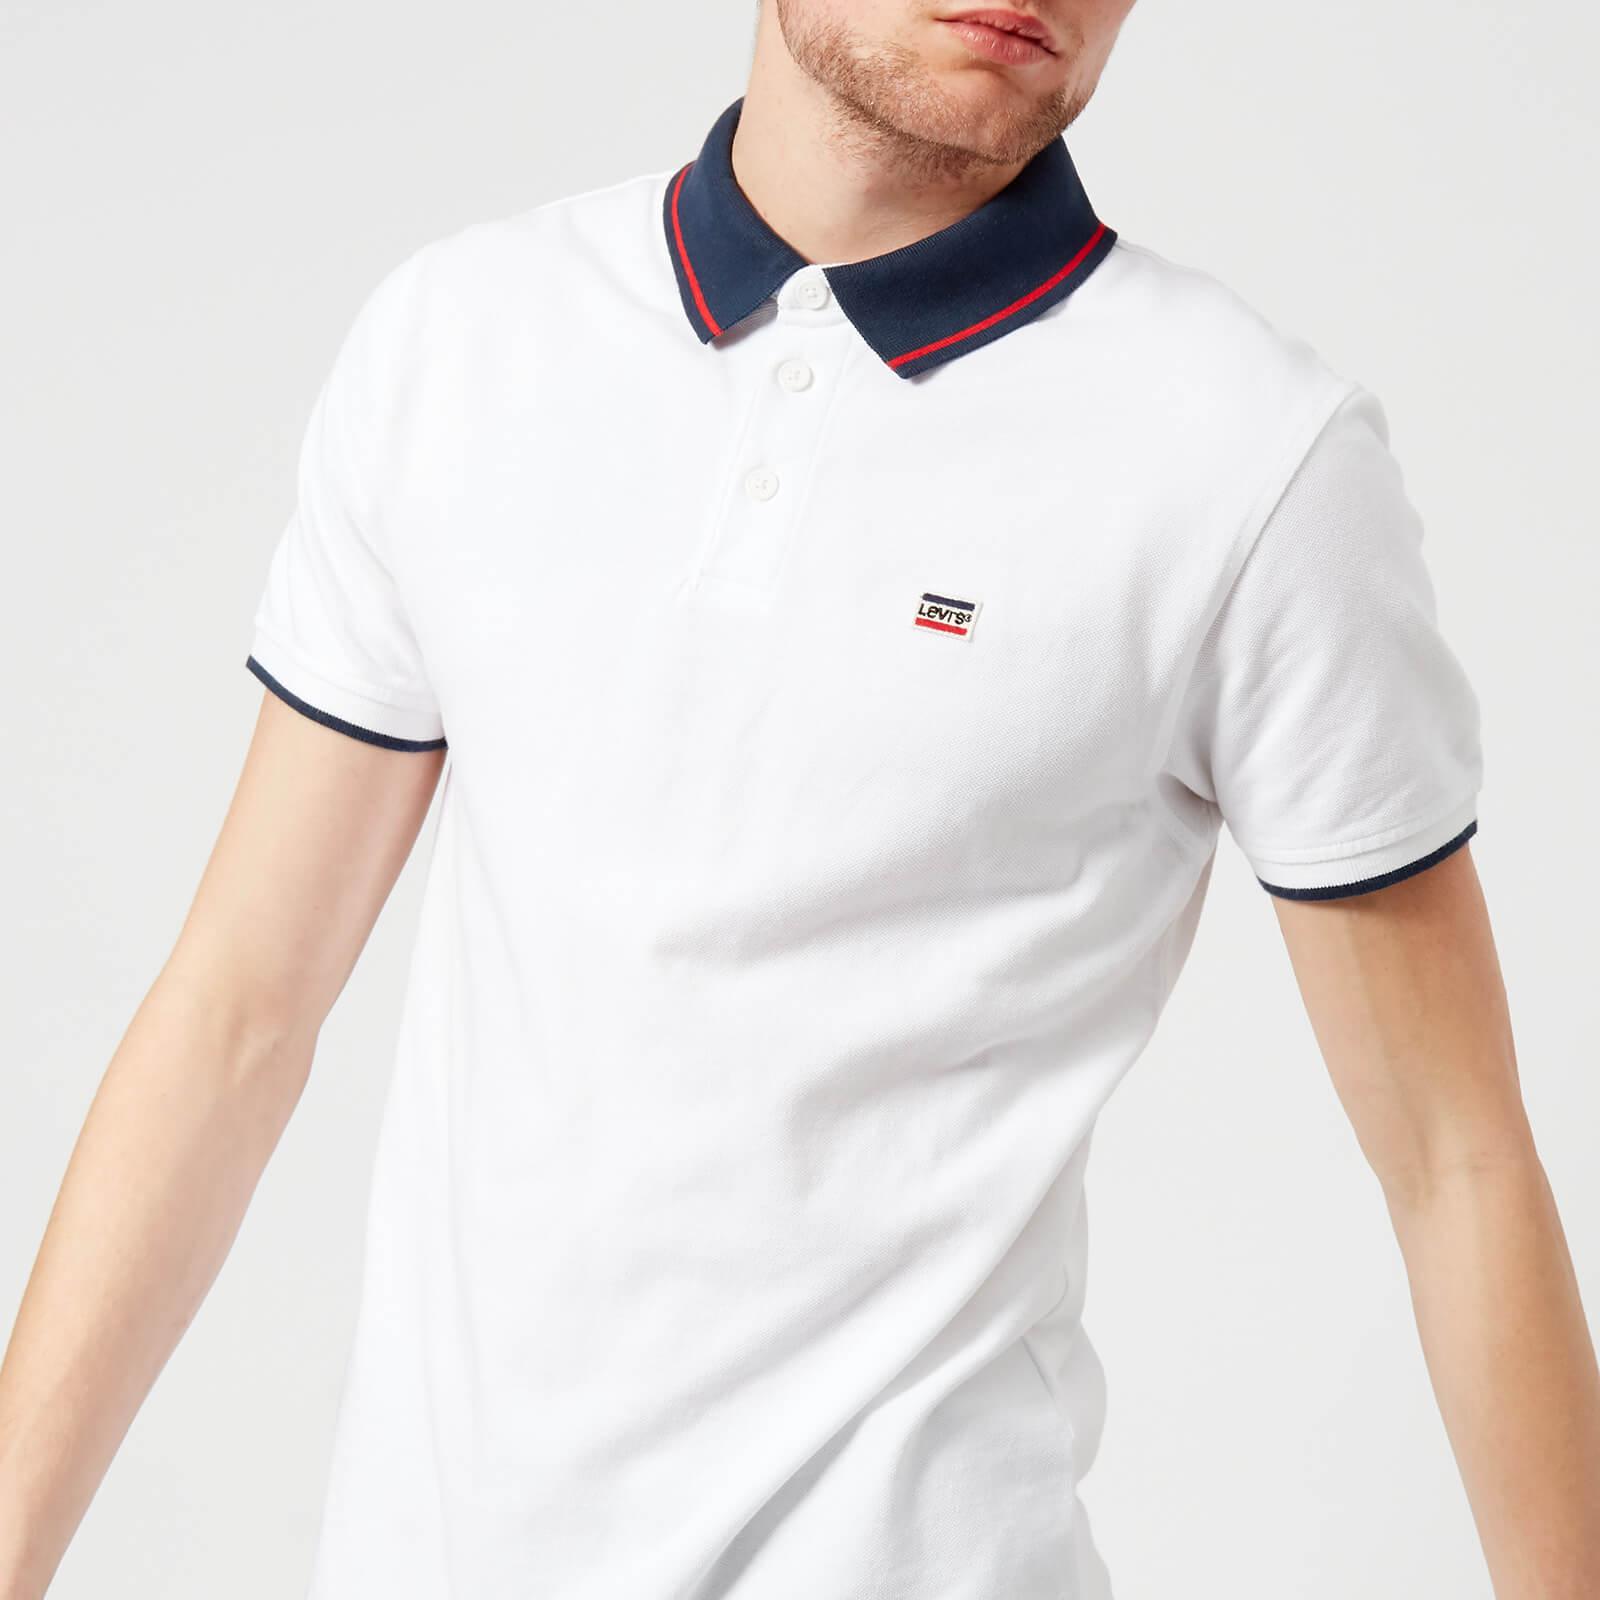 Levi's Cotton Breaker Logo Polo Shirt in White for Men - Lyst